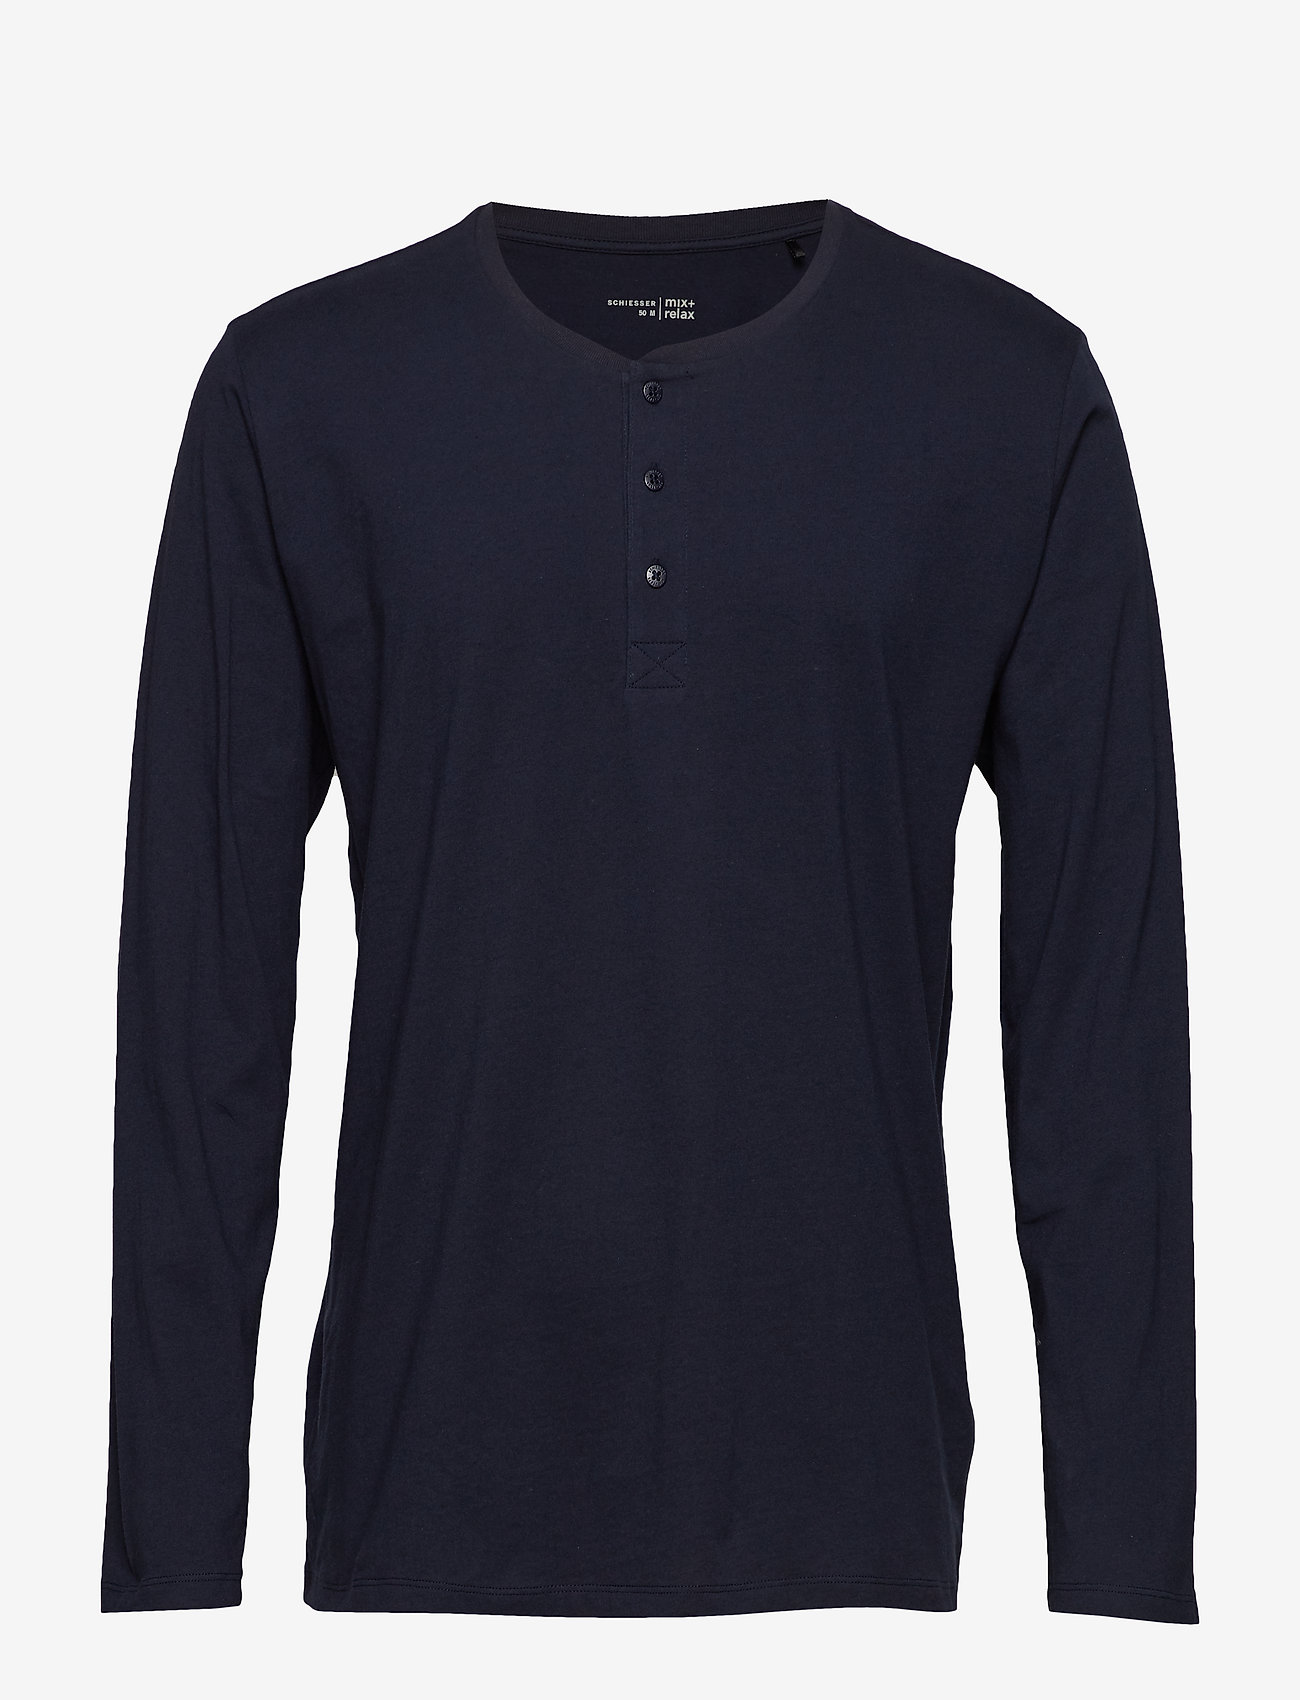 Schiesser - Shirt 1/1 - long-sleeved t-shirts - dark blue - 1